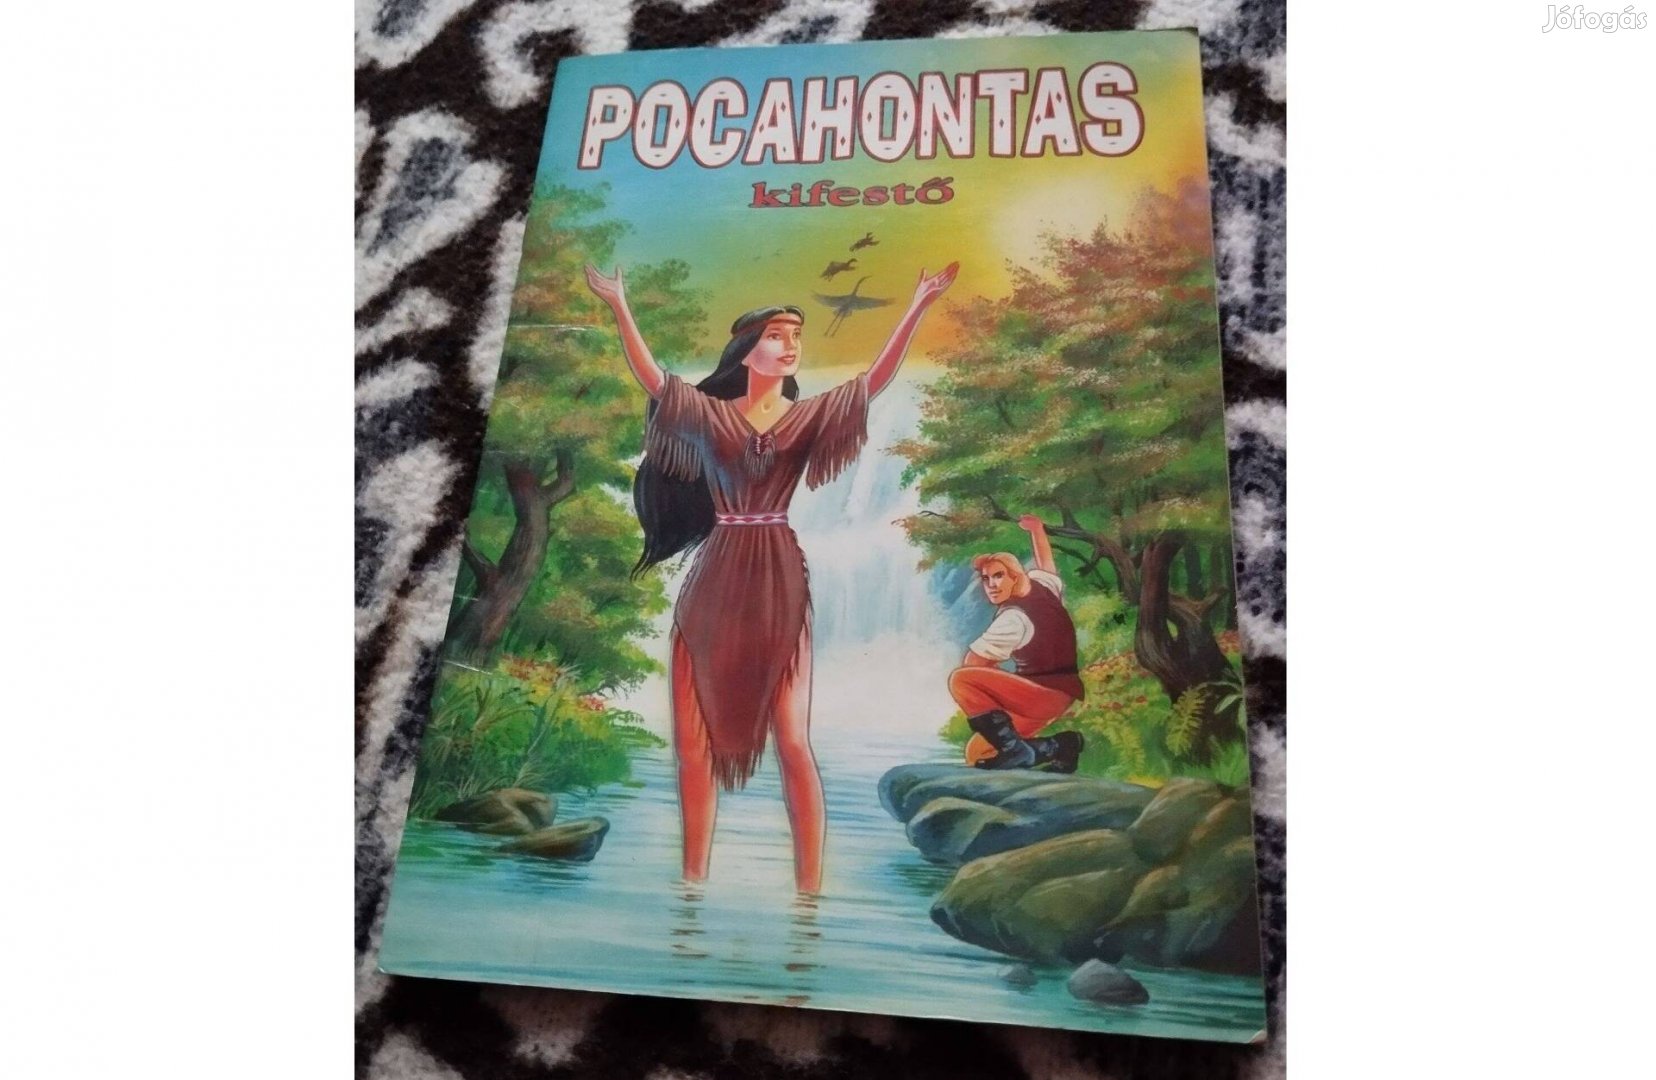 Pocahontas kifestő könyv